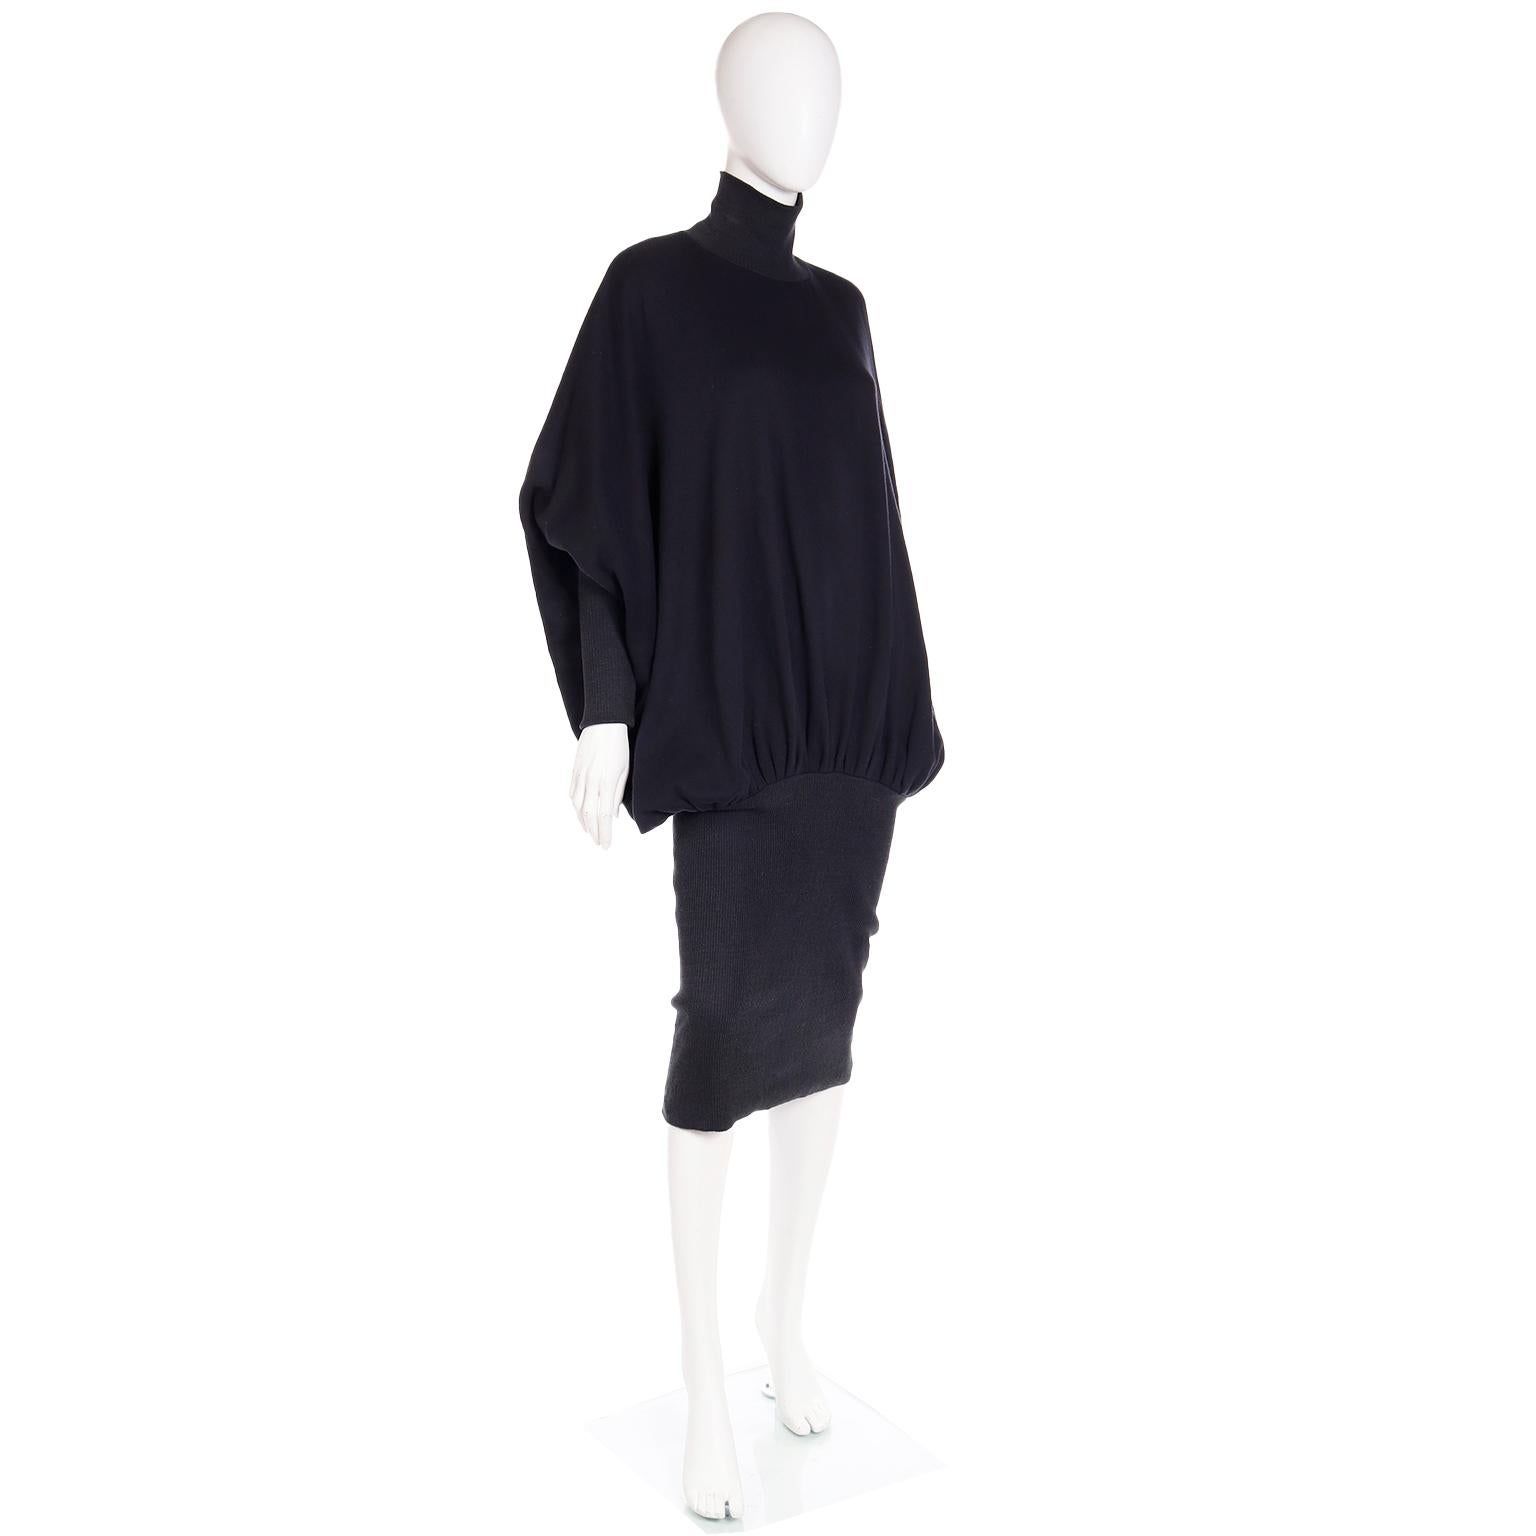 Norma Kamali 1985 Vintage Sweatshirt Material Dress in the MET 3